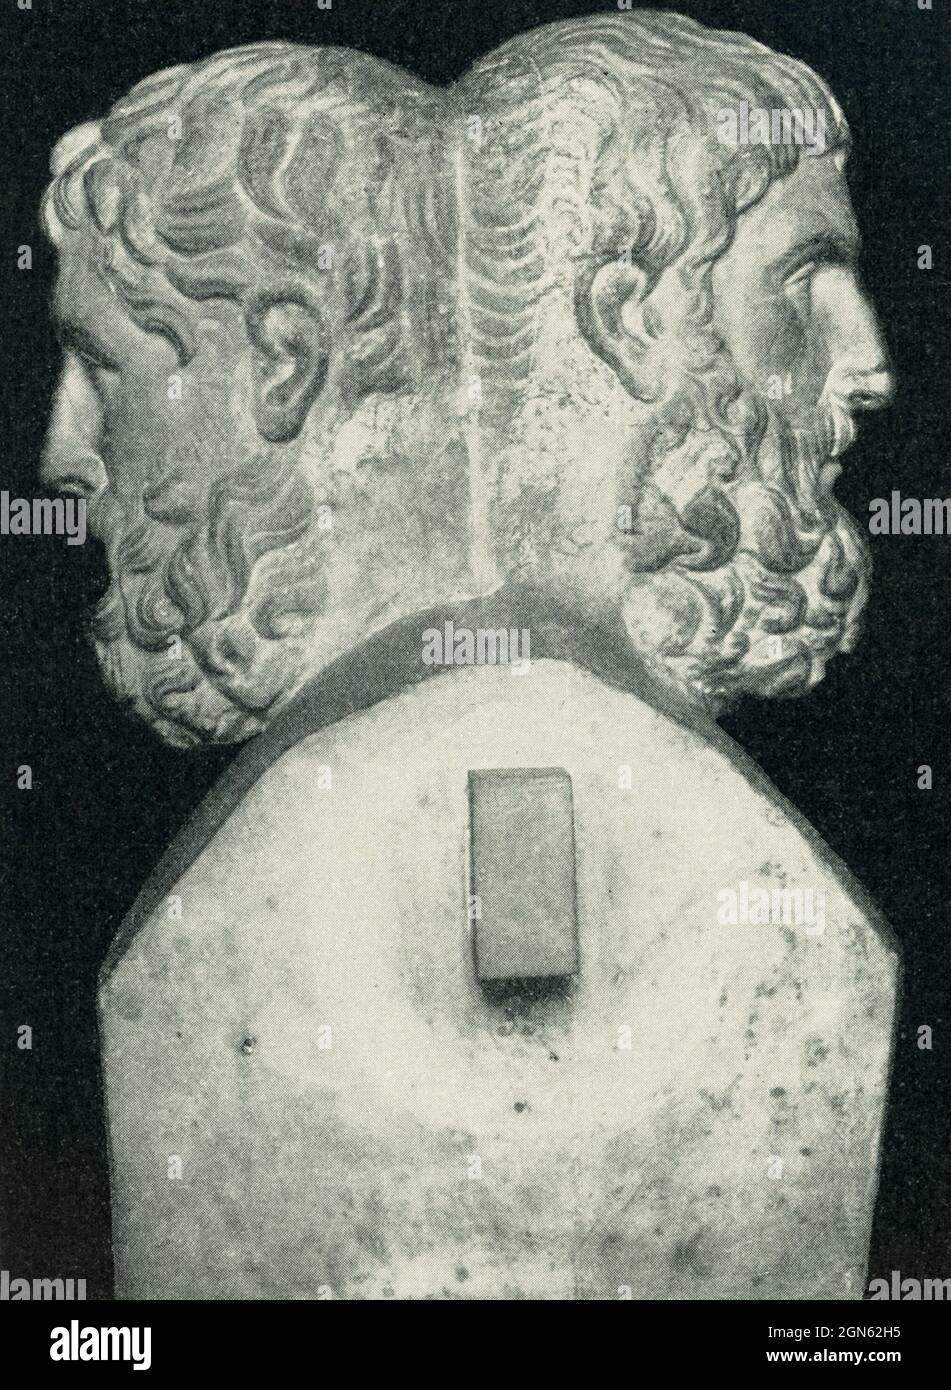 Esta foto de 1910 muestra el doble ermo de Epicurus y Metadorus. La escultura es de estilo helenístico. Epicurus (341–270 a.C.) fue un antiguo filósofo y sabio griego que fundó el epicuranismo, una escuela de filosofía muy influyente. Metróoro de Chios fue un filósofo griego que vivió en el siglo 4th a.C. Herm, en la religión griega, se refiere a un objeto sagrado de piedra conectado con el culto de Hermes, el dios de la fertilidad. Estos fueron normalmente coronados por la cabeza barbuda de Hermes (de ahí el nombre) u otra figura (aquí Epicurus y Metadorus). El original se encuentra en el Louvre de París. Foto de stock